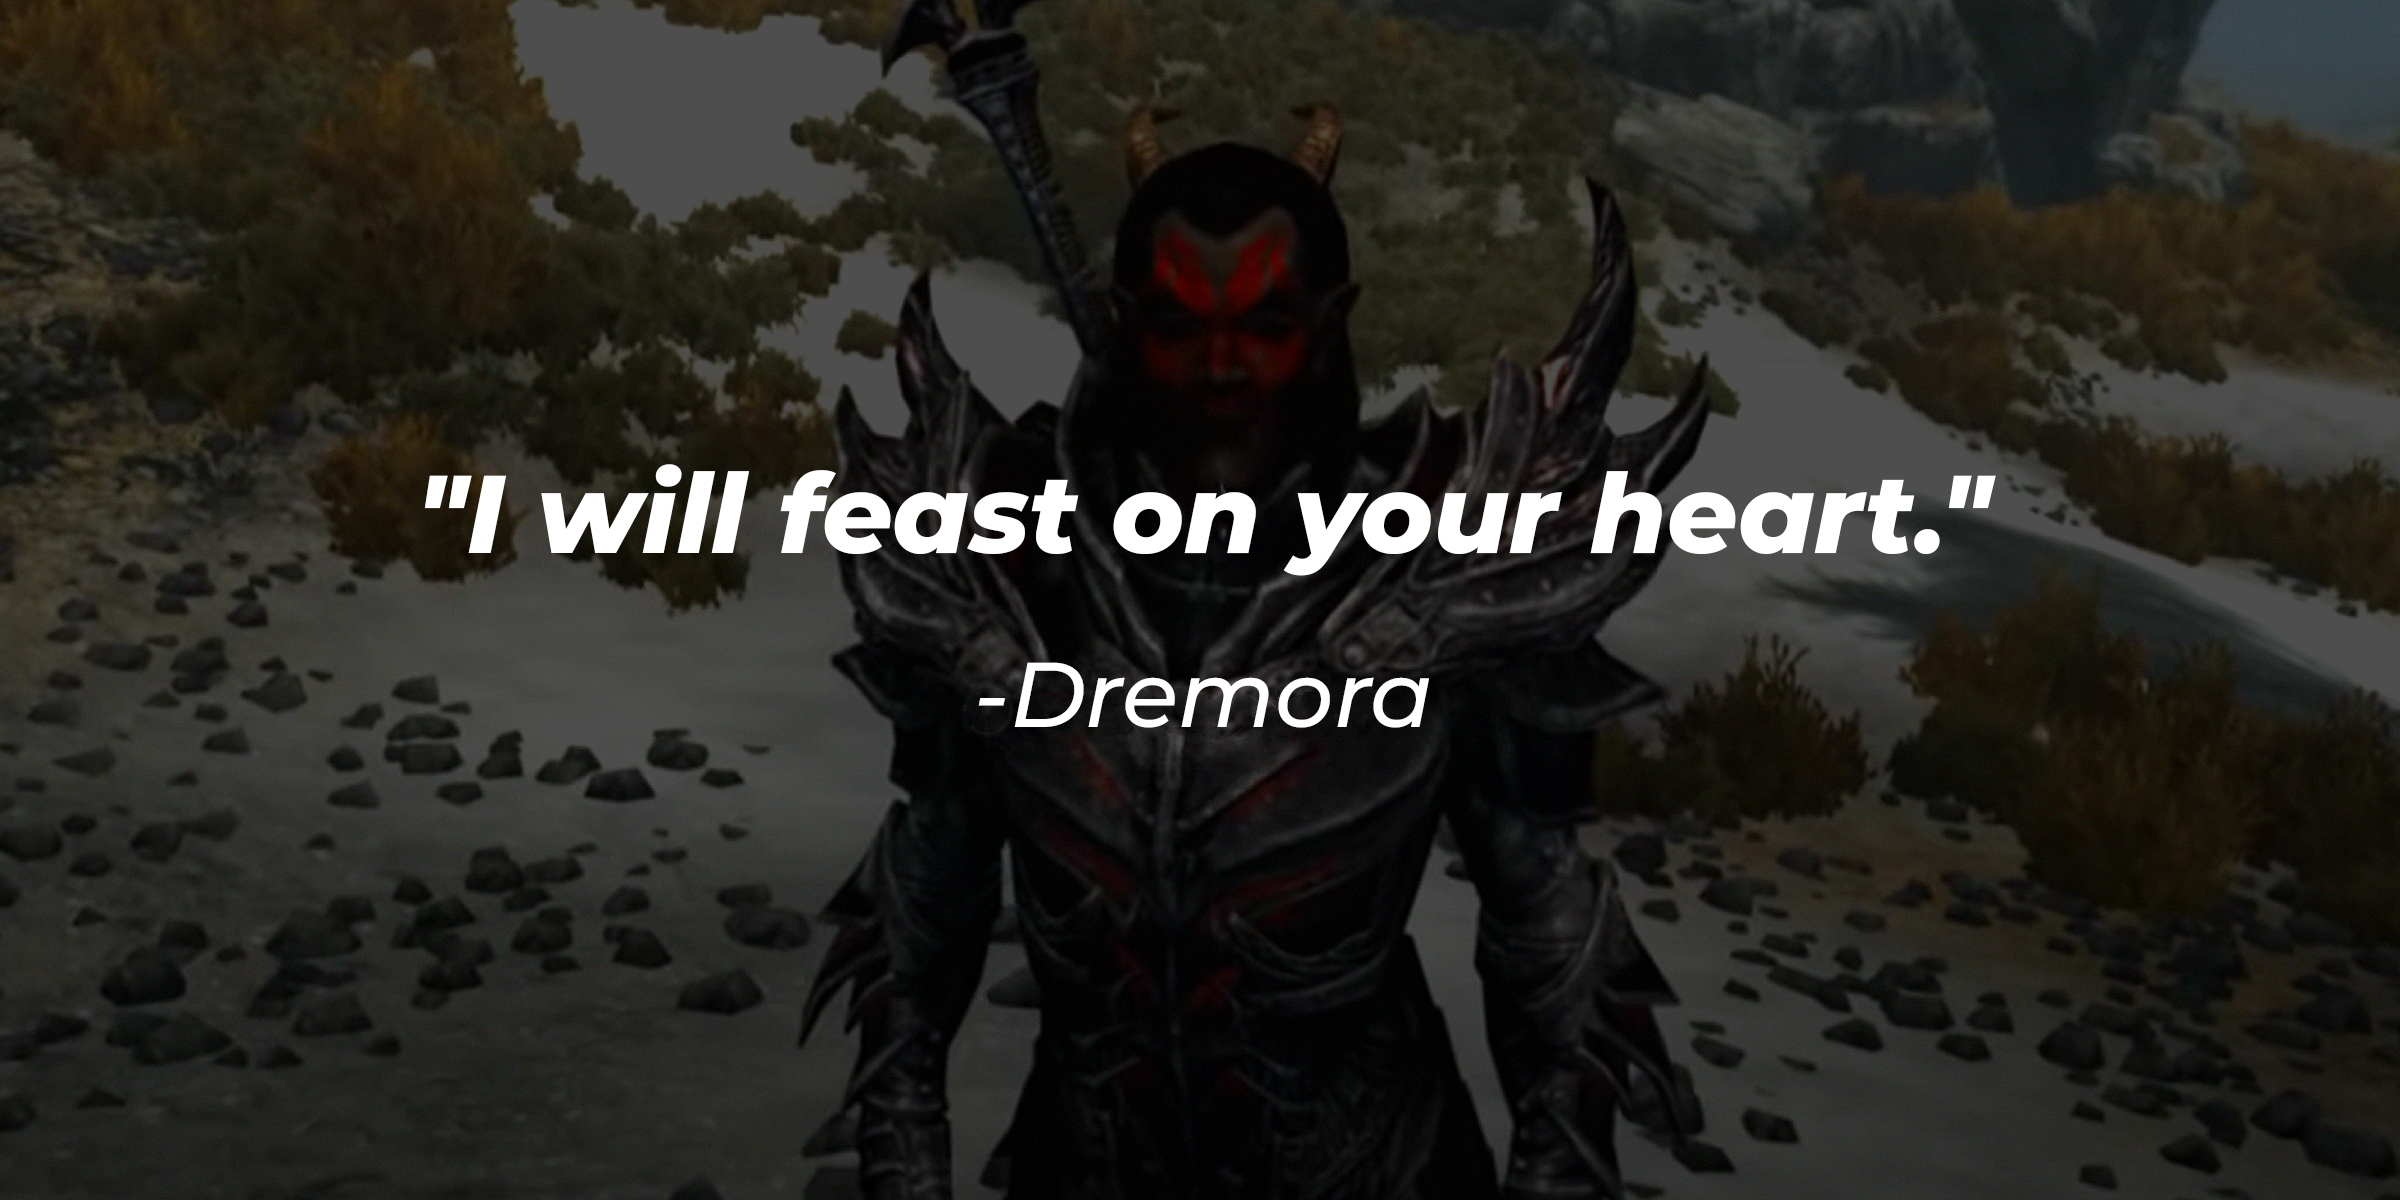 Demora's quote: "I will feast on your heart." | Source: Facebook/elderscrolls